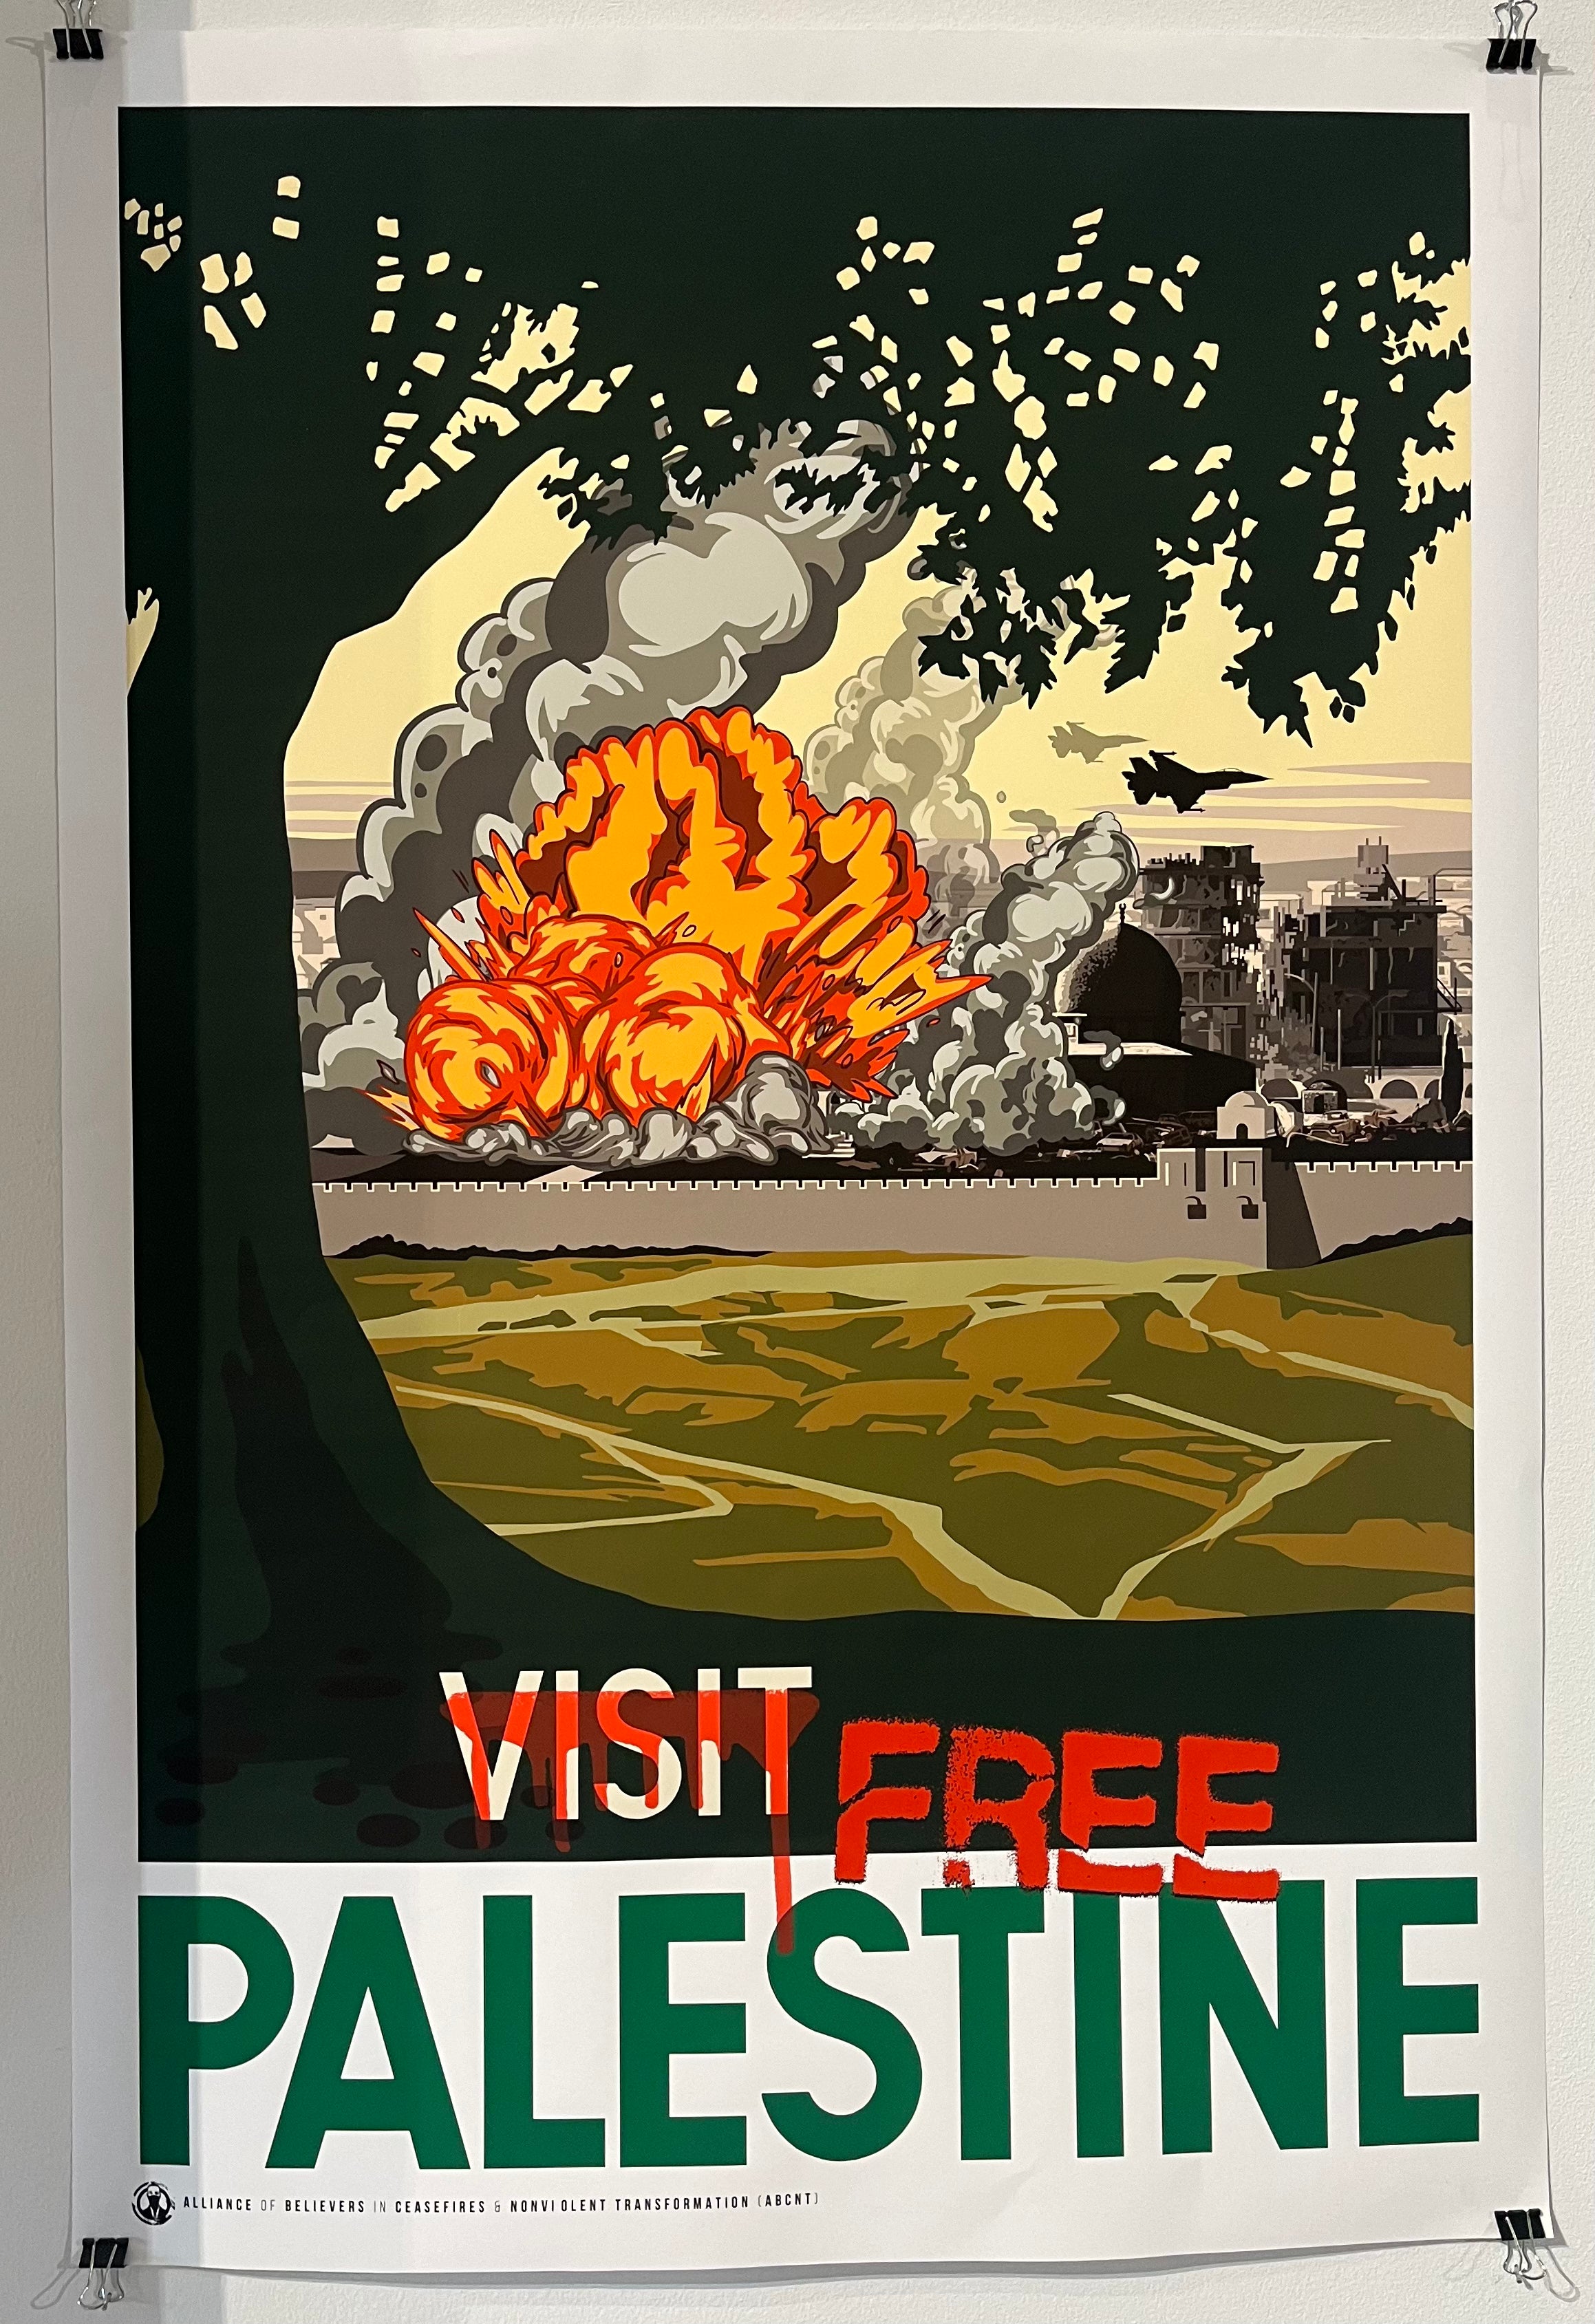 ABCNT - Free Palestine